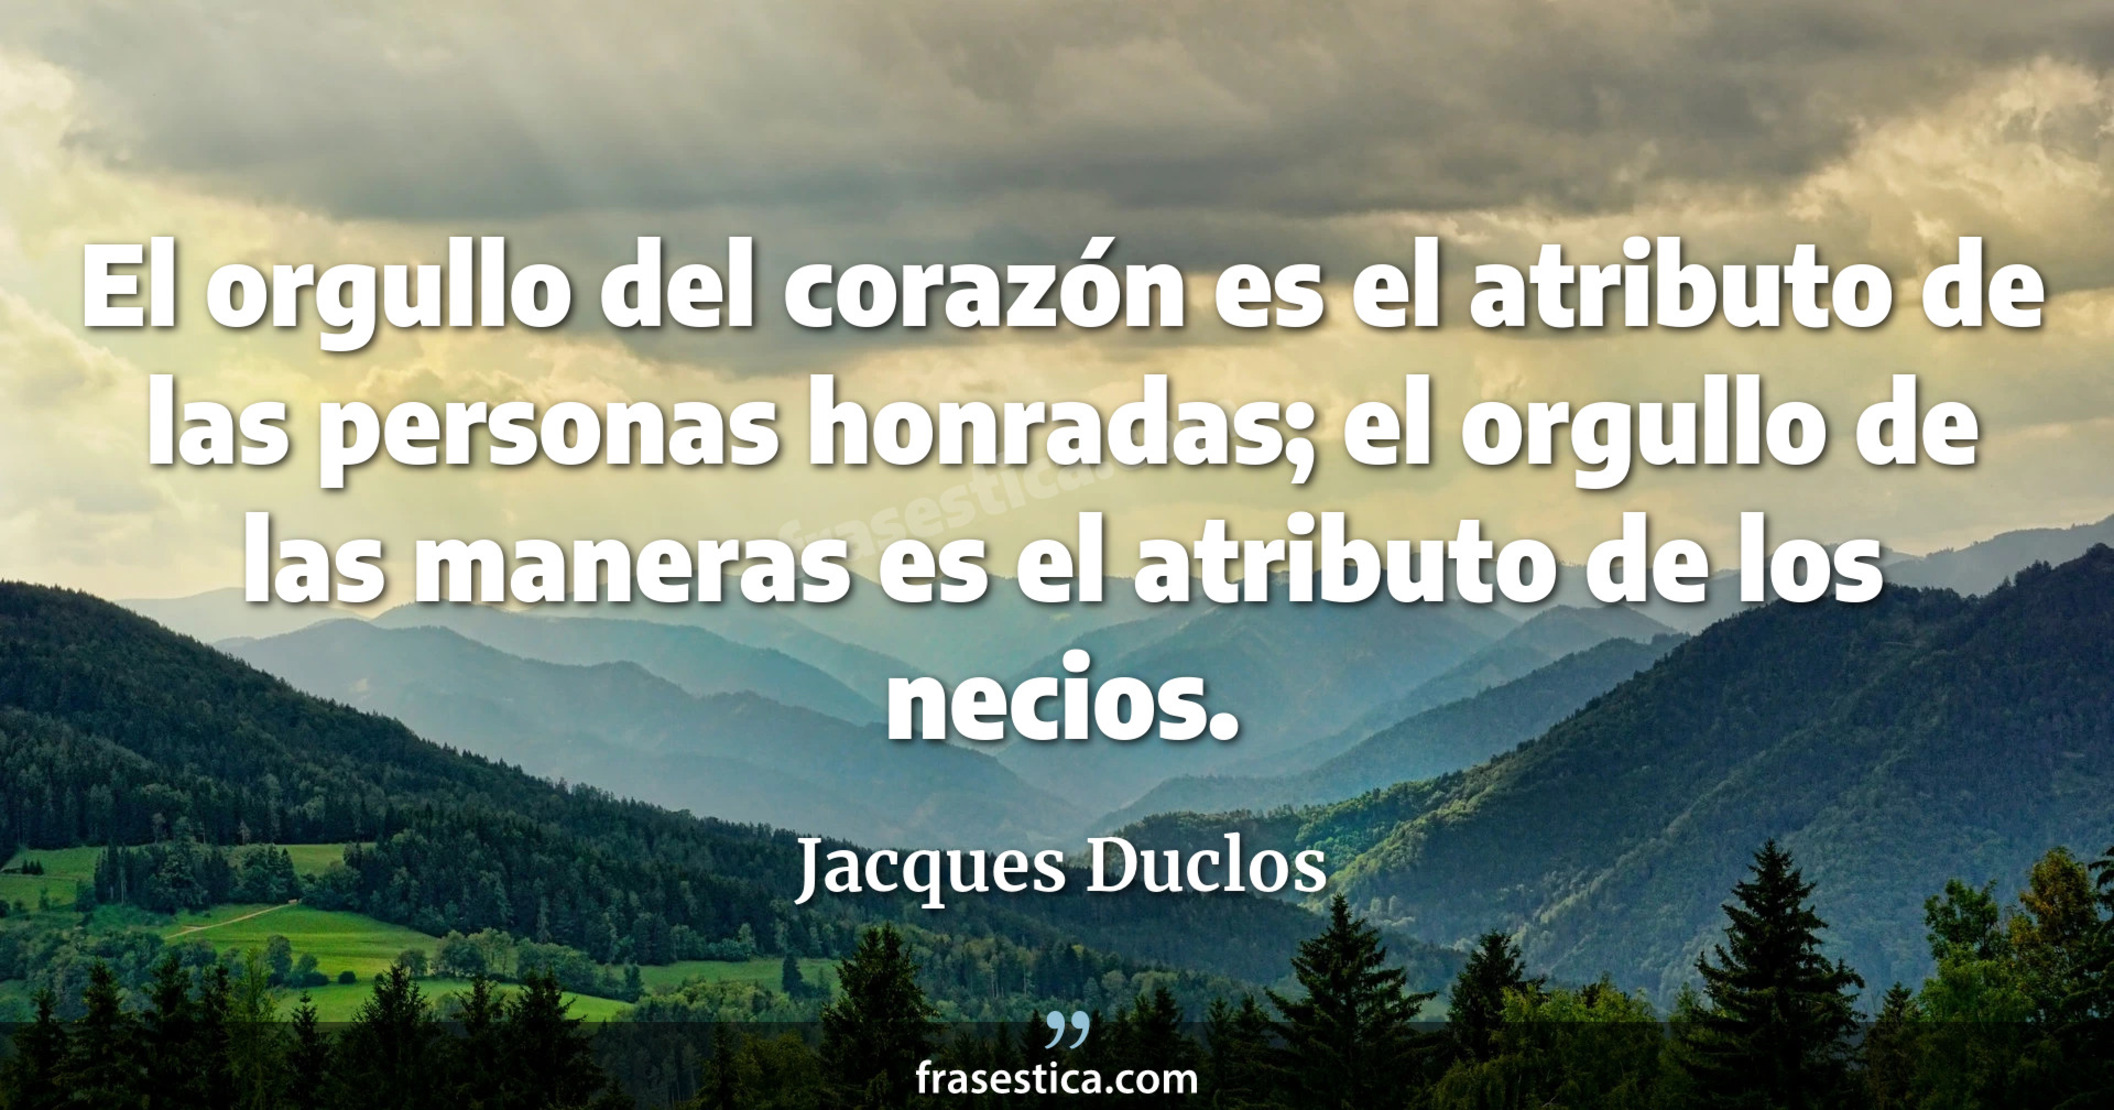 El orgullo del corazón es el atributo de las personas honradas; el orgullo de las maneras es el atributo de los necios. - Jacques Duclos